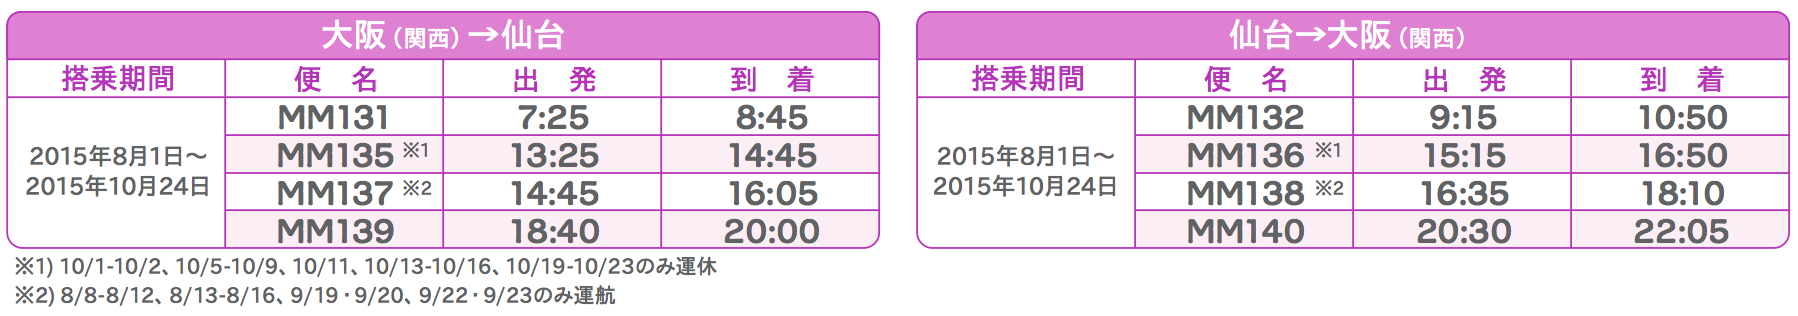 大阪 関西国際空港 宮城 仙台空港 路線の時刻表 旅するlcc